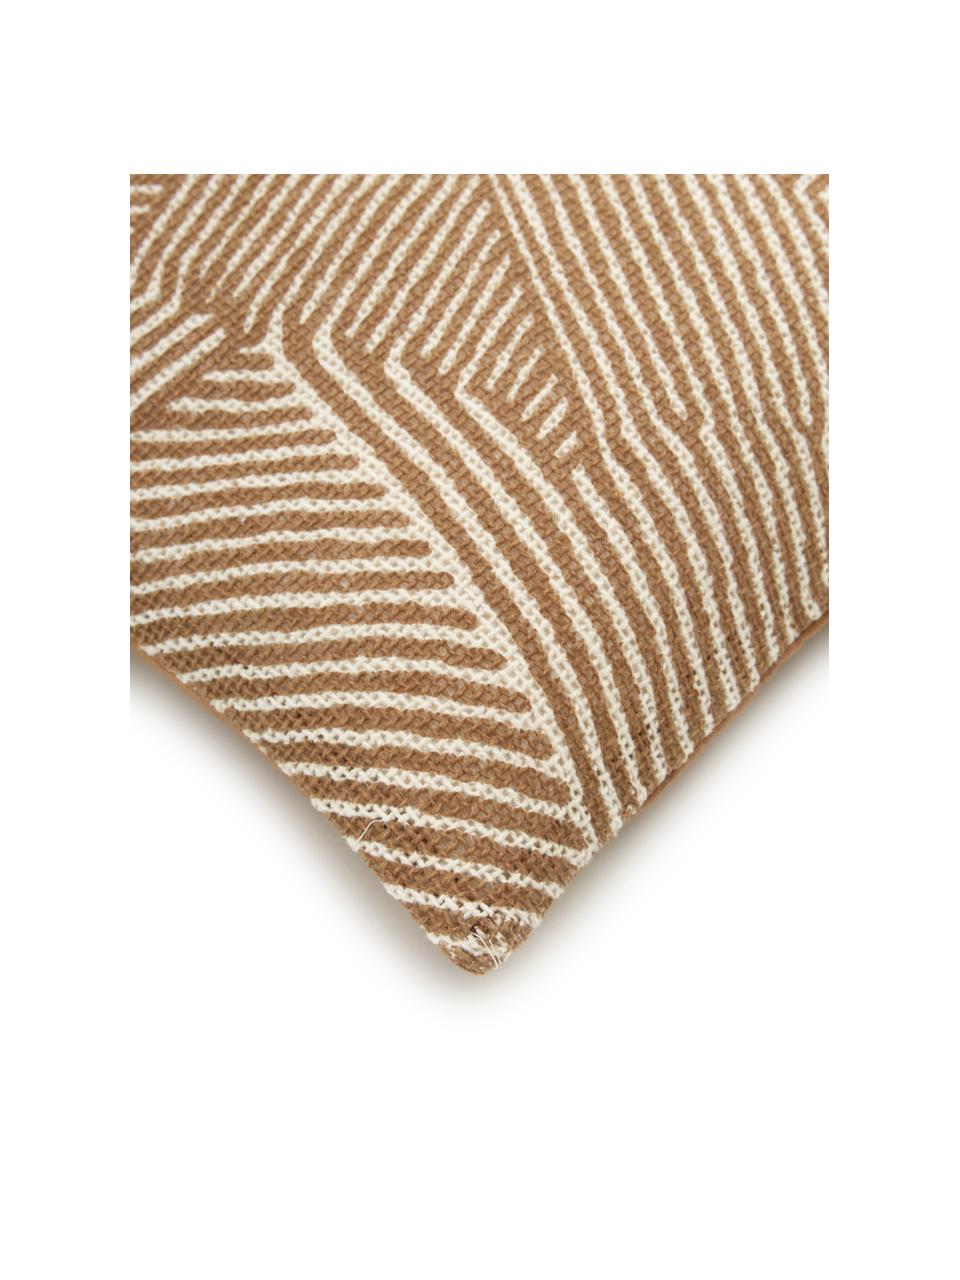 Kissenhülle Nadia mit grafischem Muster, 100%  Baumwolle, Braun, Cremeweiss, B 30 x L 50 cm